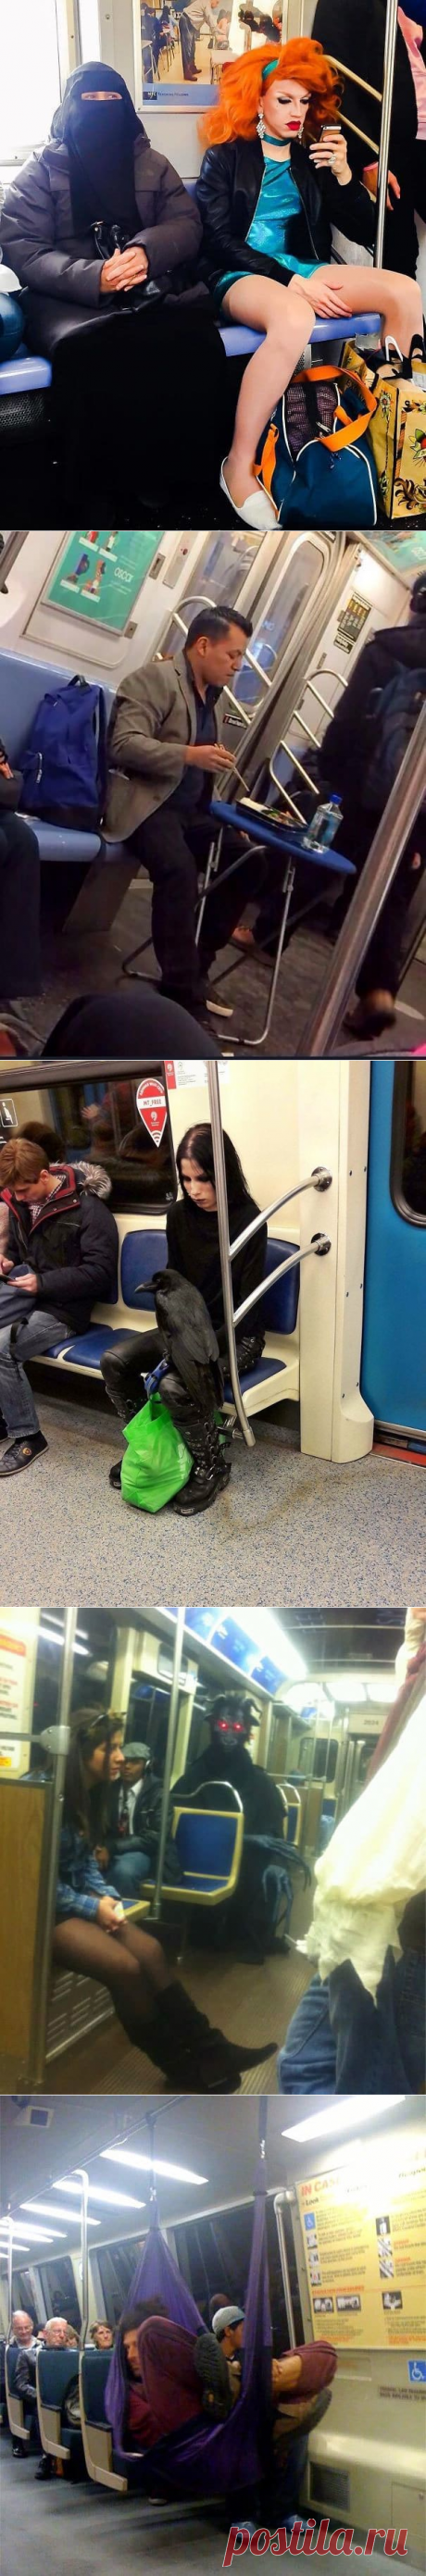 20 фотографий, которые убедят вас в том, что метро - самое странное место на Земле